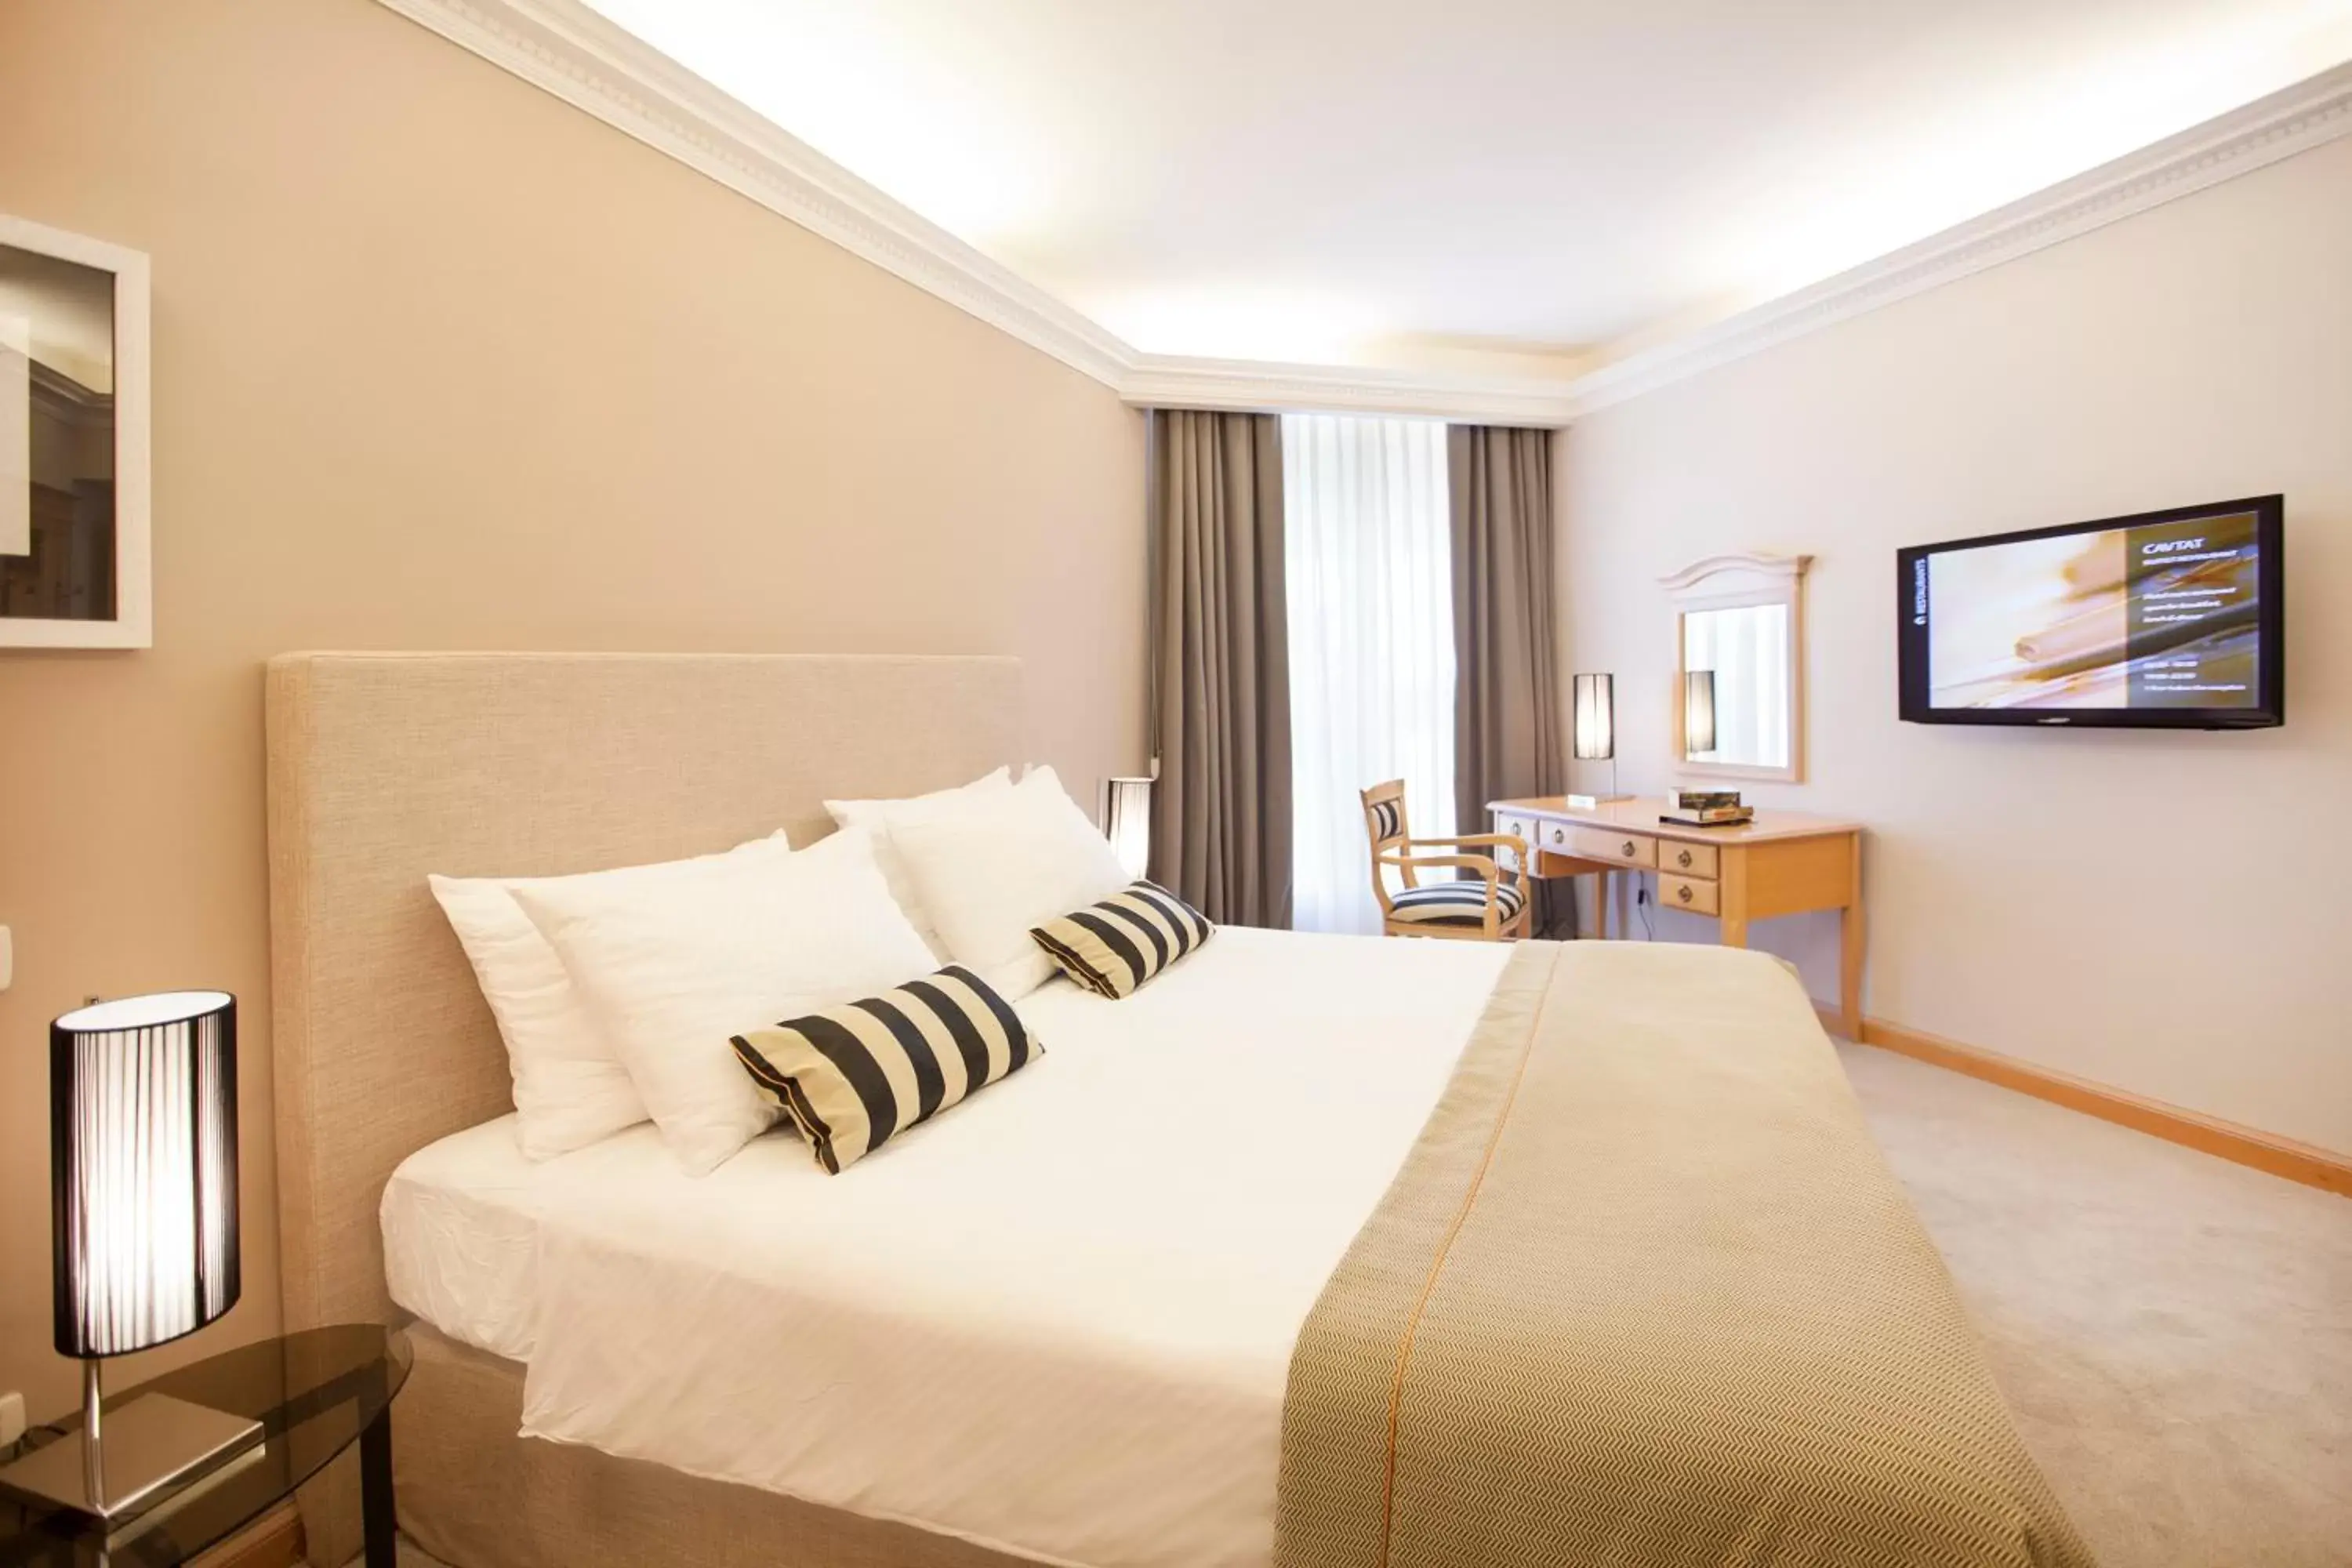 Bedroom in Hotel Croatia